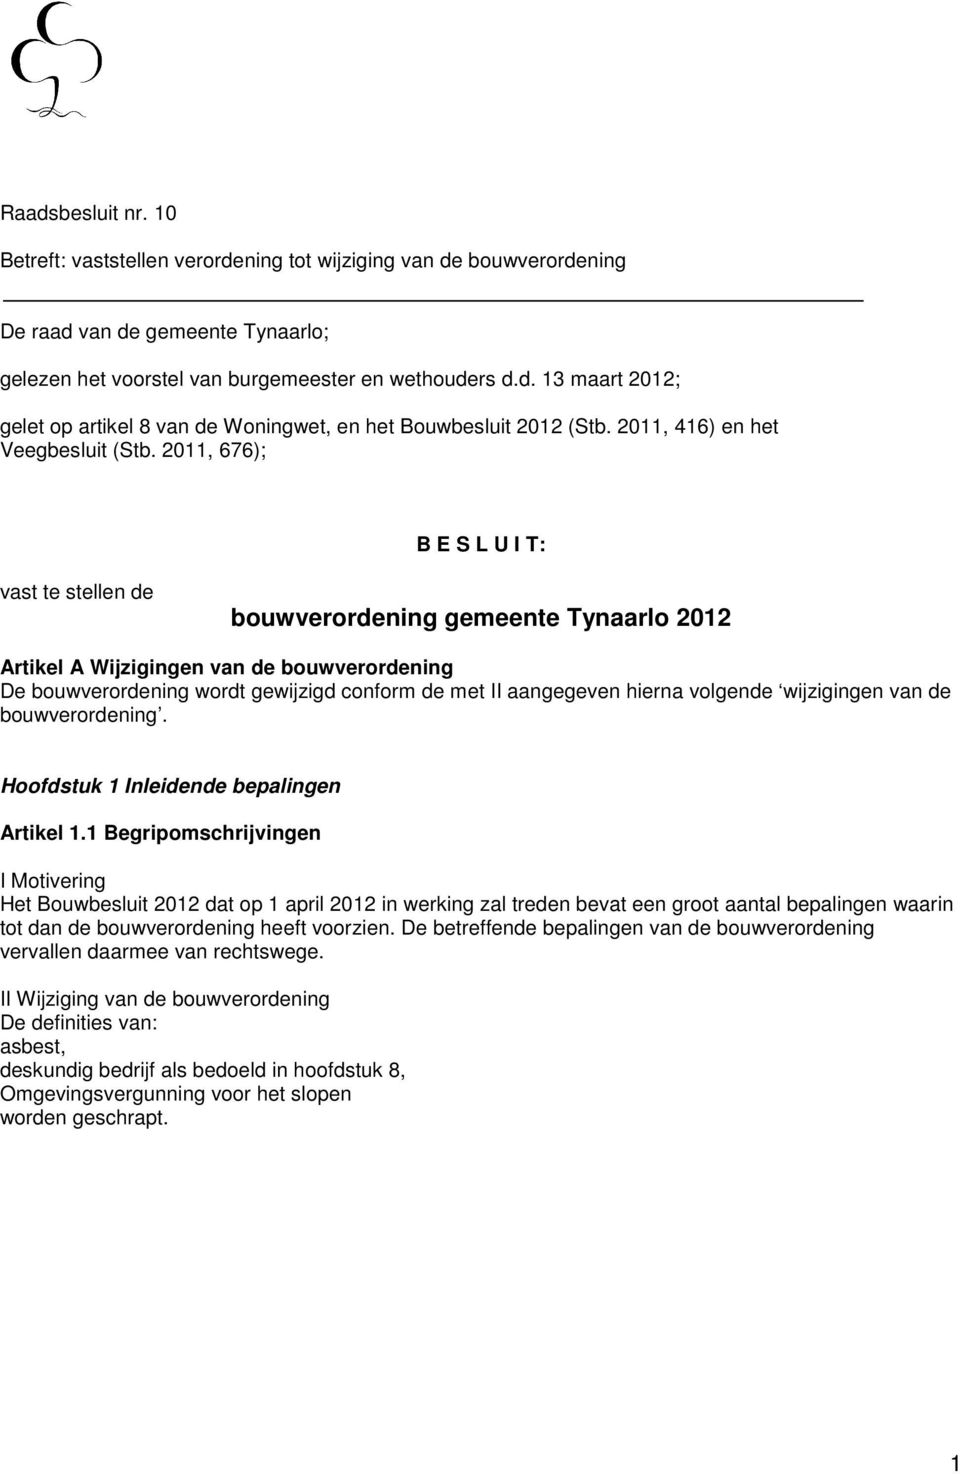 2011, 676); B E S L U I T: vast te stellen de bouwverordening gemeente Tynaarlo 2012 Artikel A Wijzigingen van de bouwverordening De bouwverordening wordt gewijzigd conform de met II aangegeven